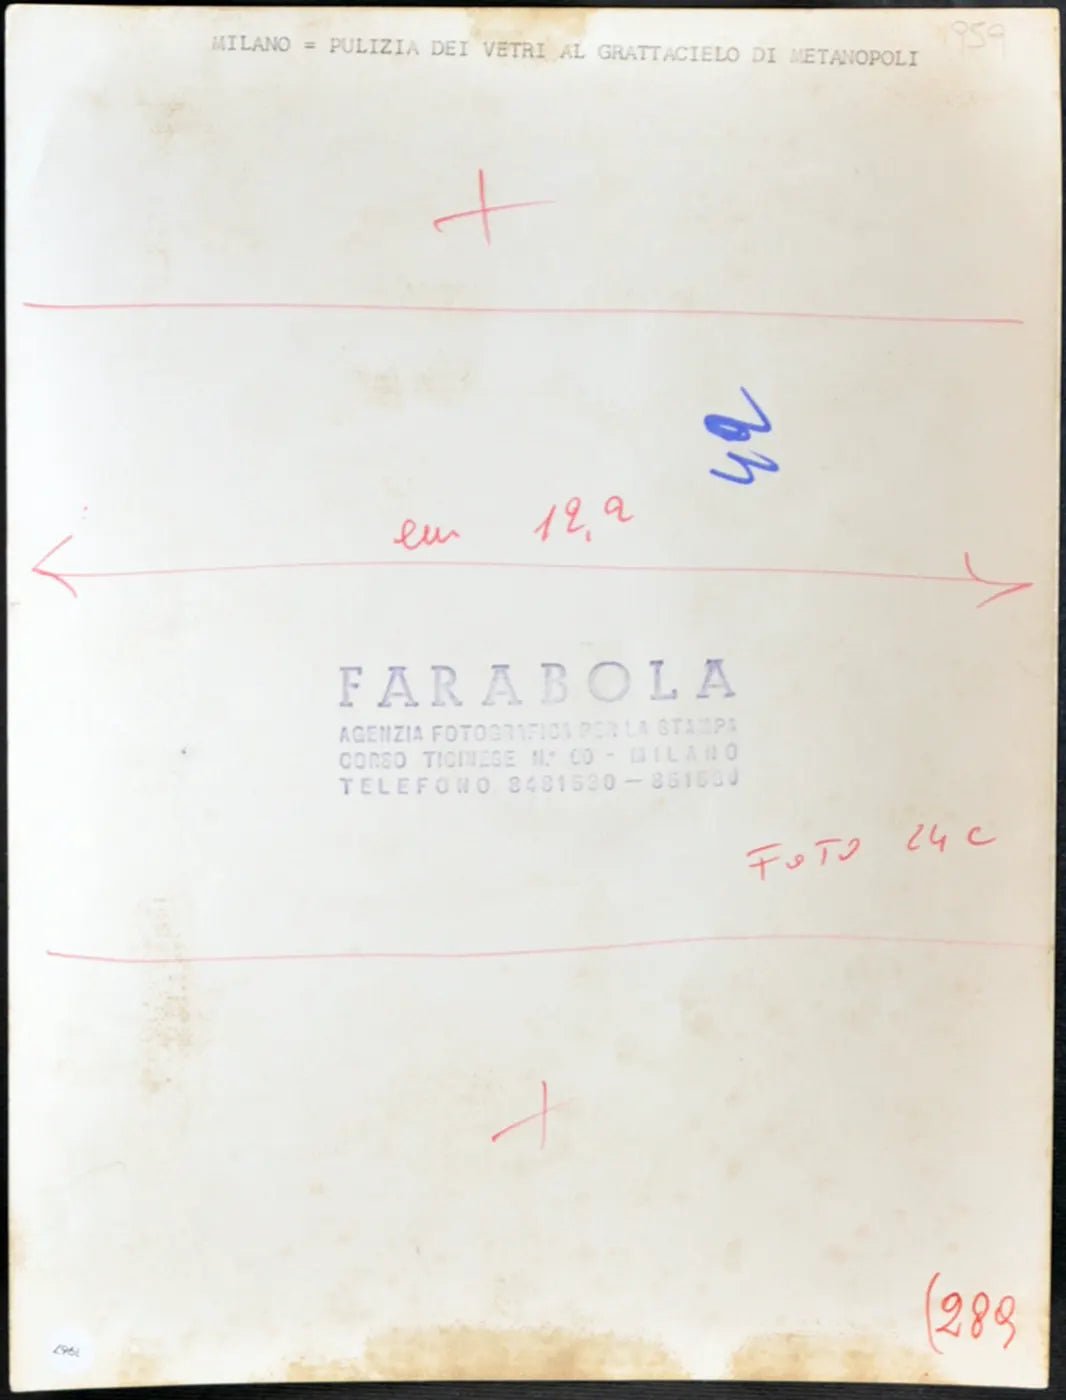 Pulizia vetri Grattacielo Metanopoli Ft 1967 - Stampa 21x27 cm - Farabola Stampa ai sali d'argento